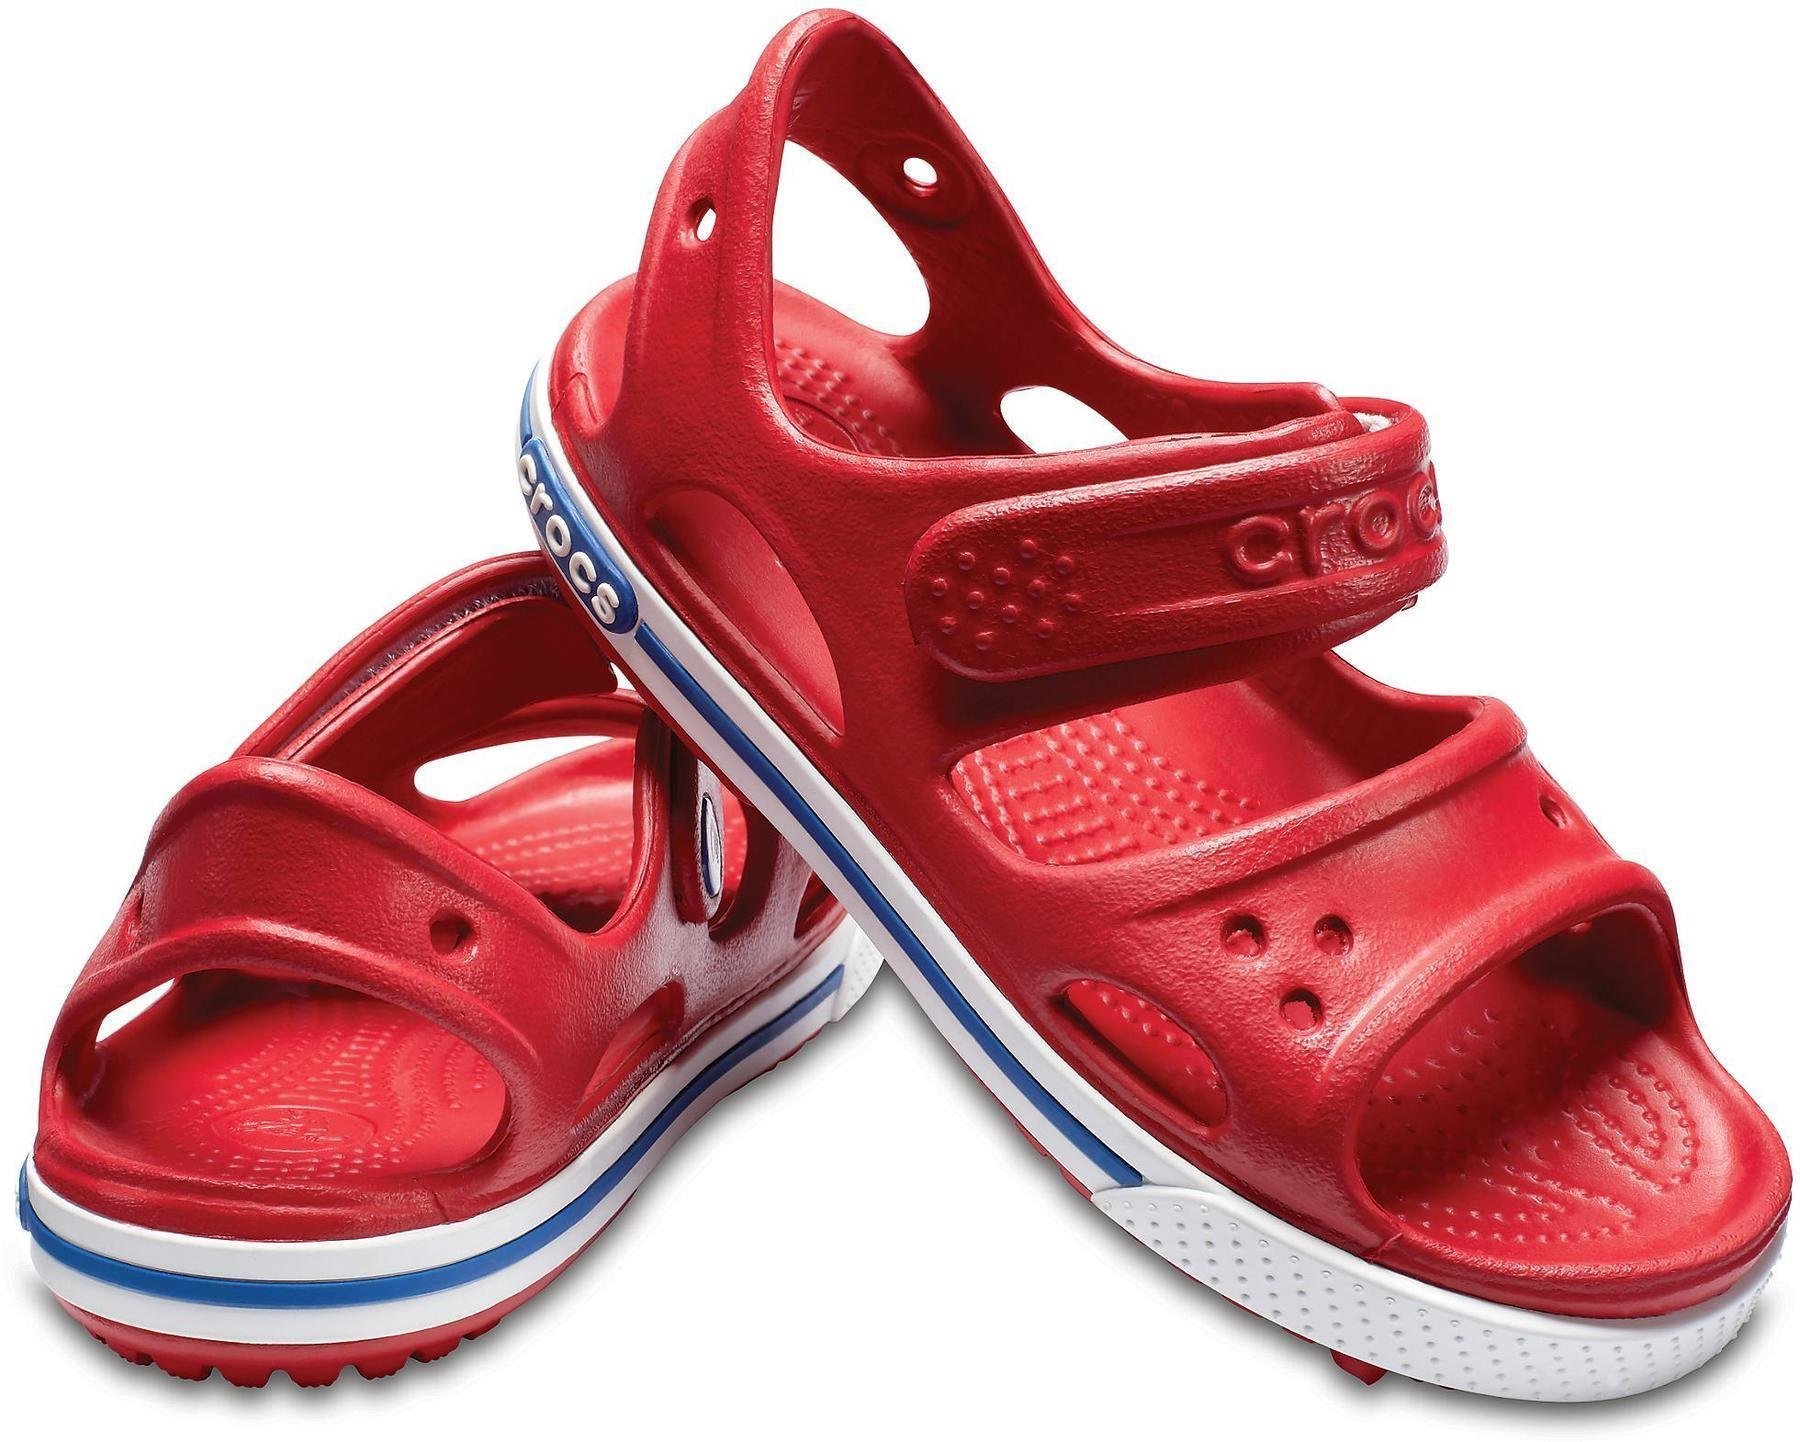 Buty żeglarskie dla dzieci Crocs Preschool Crocband II Sandal Pepper/Blue Jean 29-30